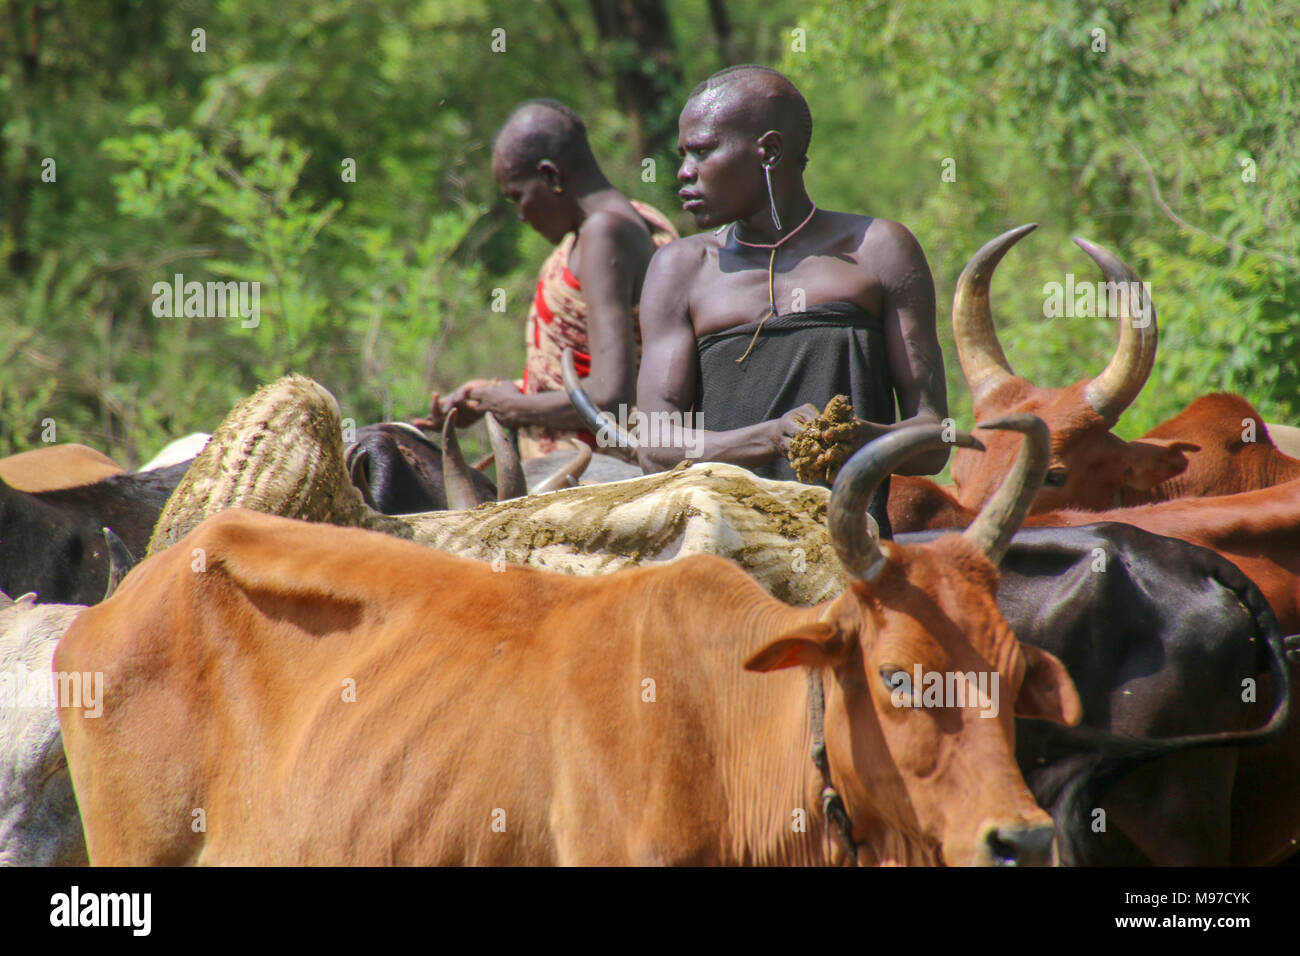 Morsi tribeswomen bovins d'élevage du Sud, l'Éthiopie, Debub Zone d'Omo, Mursi tribu est un groupe ethnique nomade d'éleveurs de bétail situé dans le sud de l'Éthiopie, c Banque D'Images